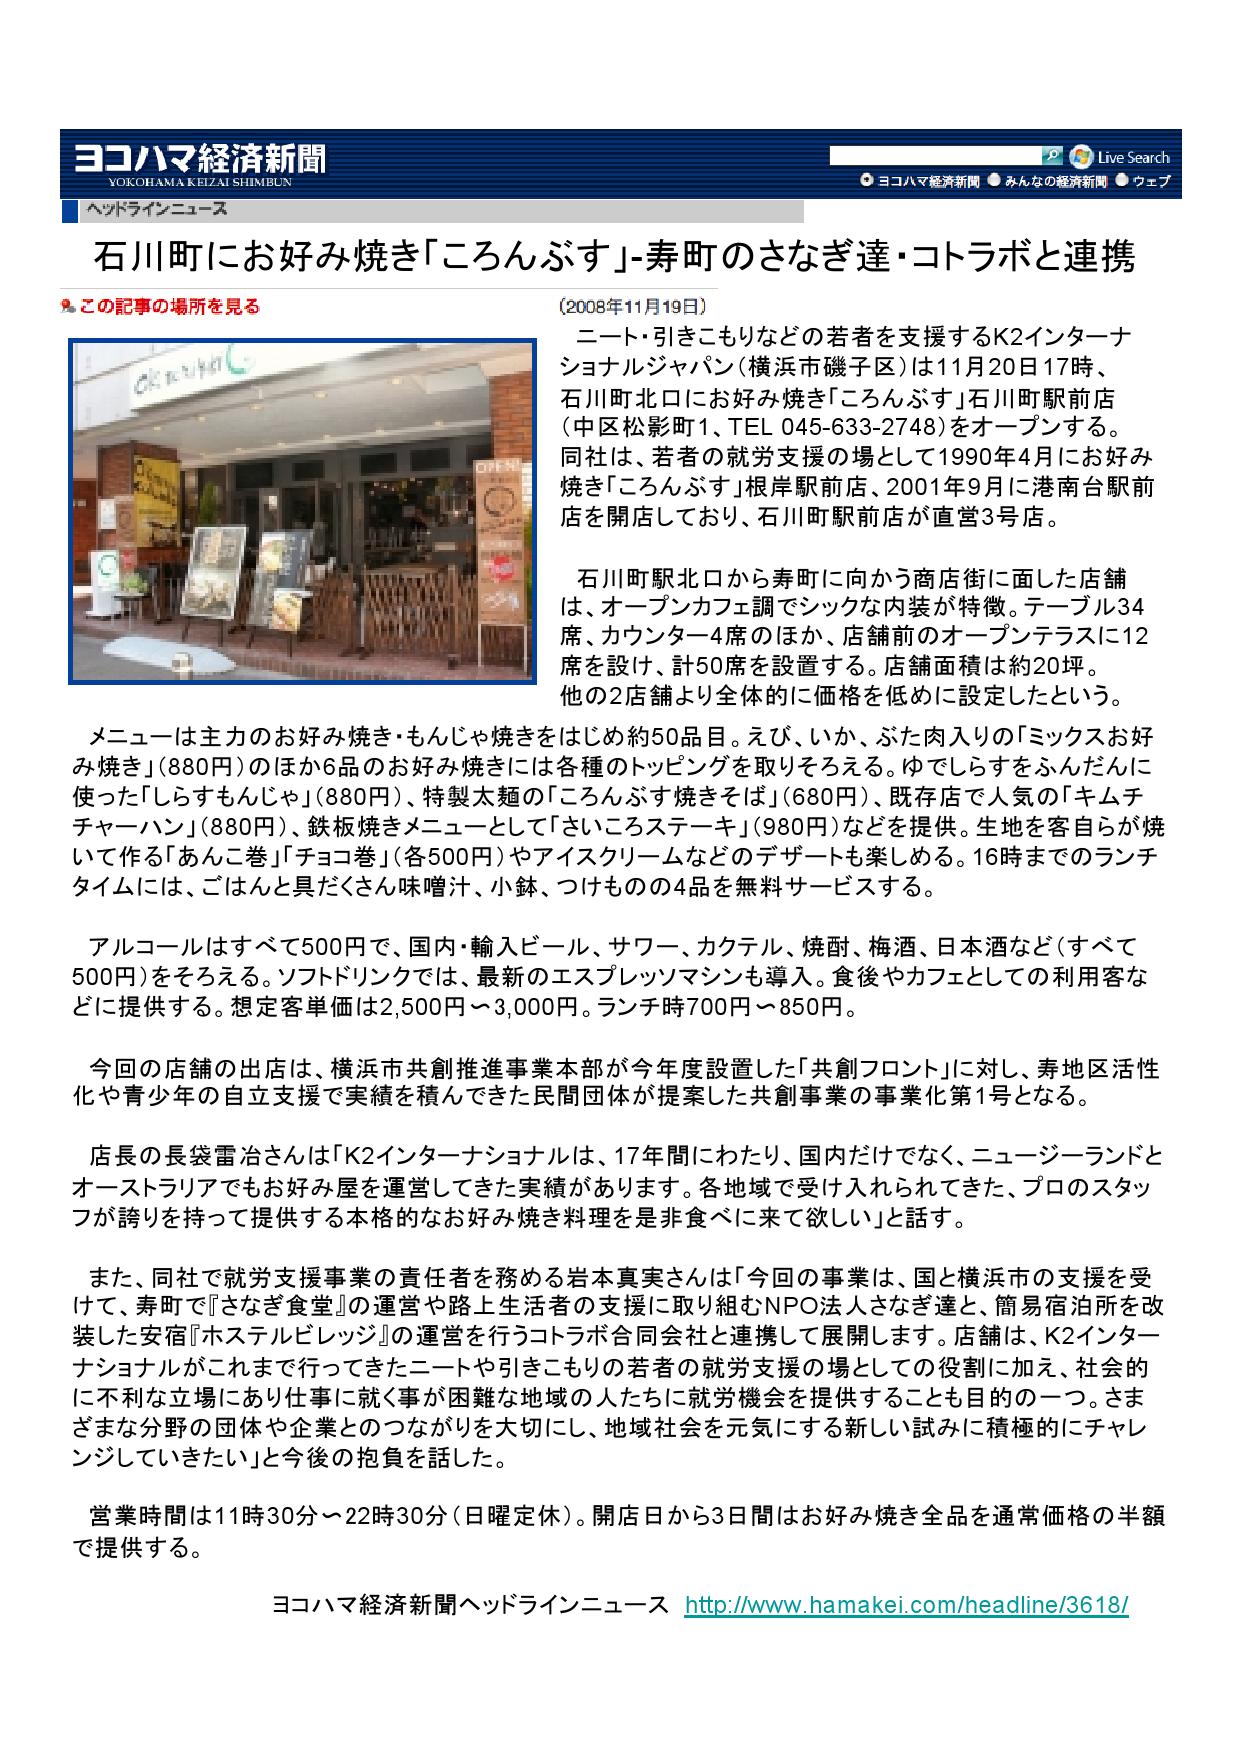 ヨコハマ経済新聞 2008年11月19日 石川町にお好み焼き「ころんぶす」-寿町のさなぎ達・コトラボと連携